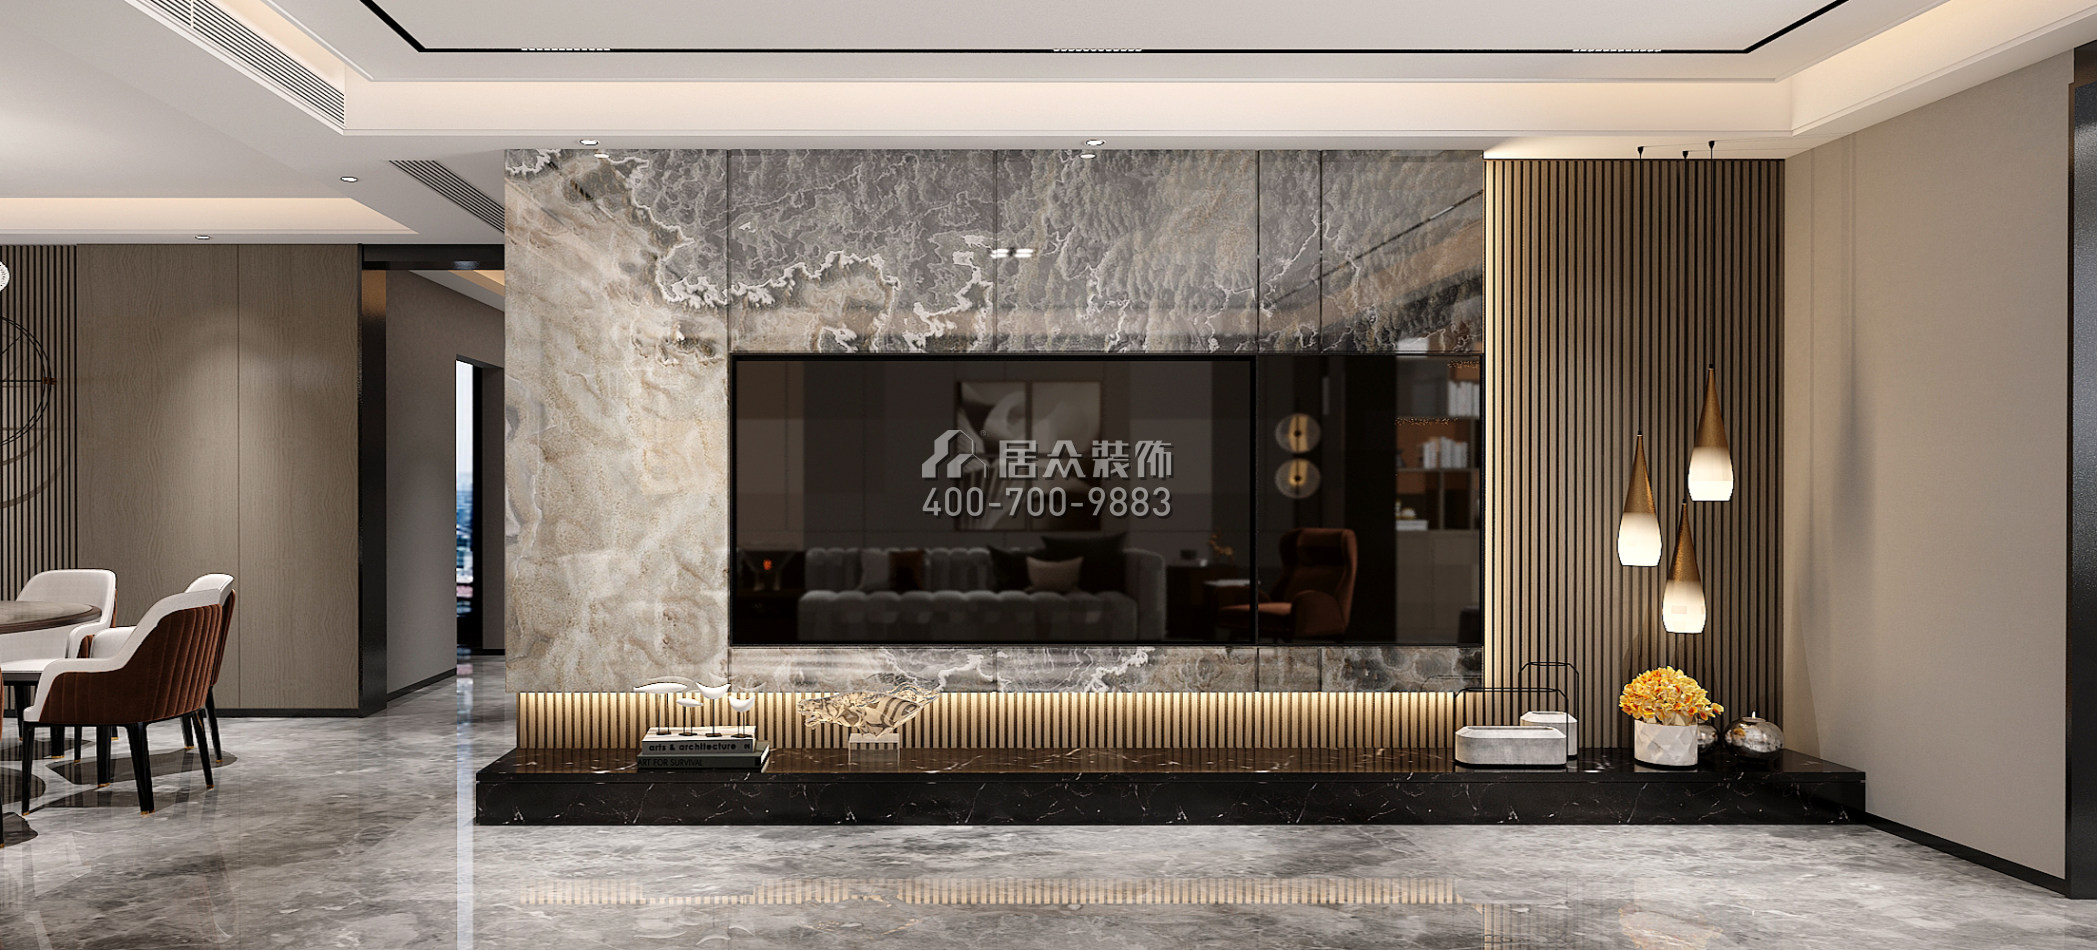 中信红树湾-三期300平方米现代简约风格平层户型客厅装修效果图